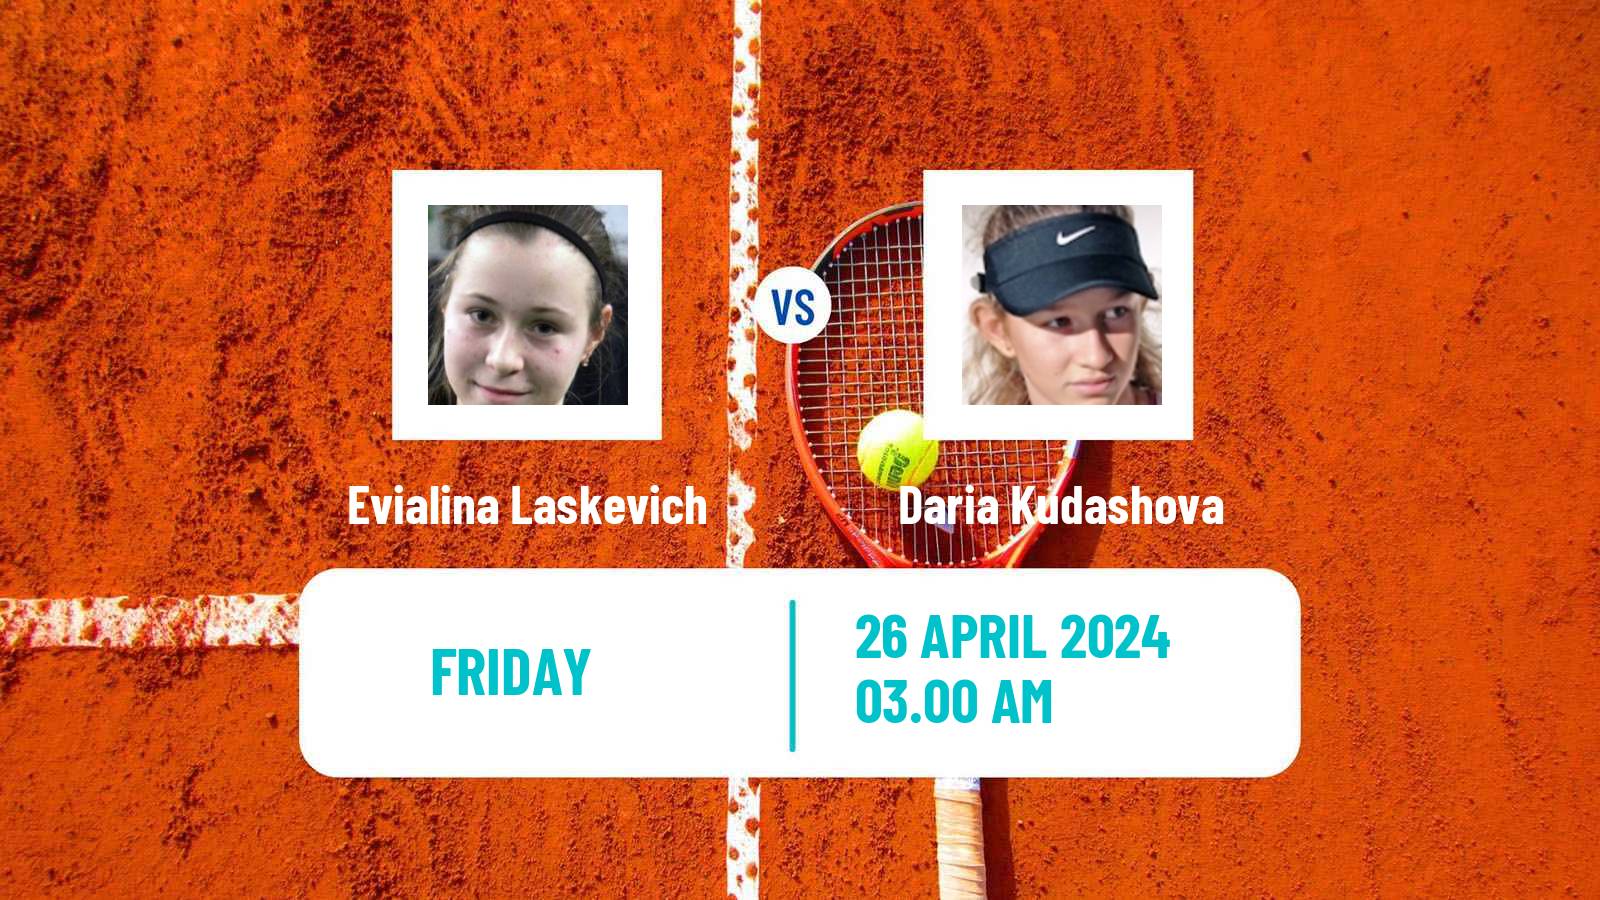 Tennis ITF W50 Lopota Women Evialina Laskevich - Daria Kudashova